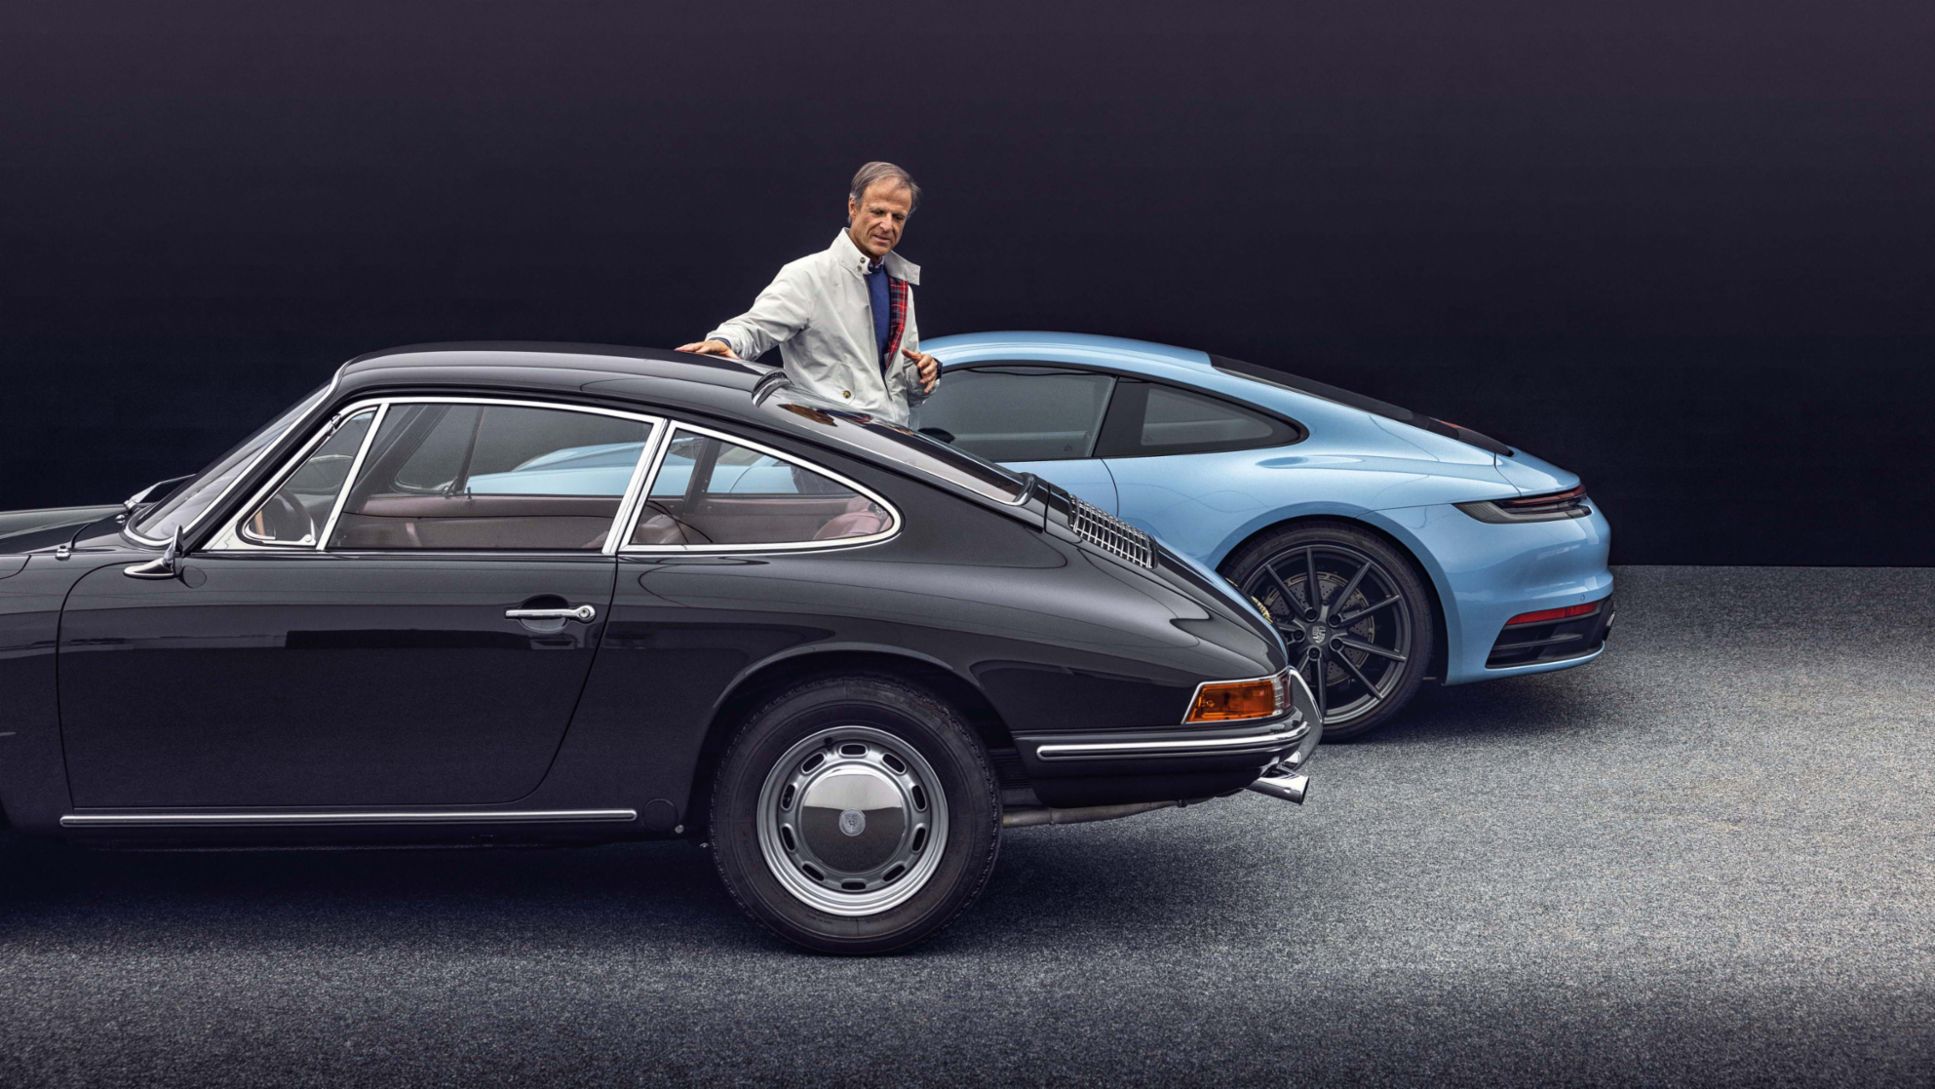 60 years of Porsche 911: an interview with Michael Mauer - Porsche ...